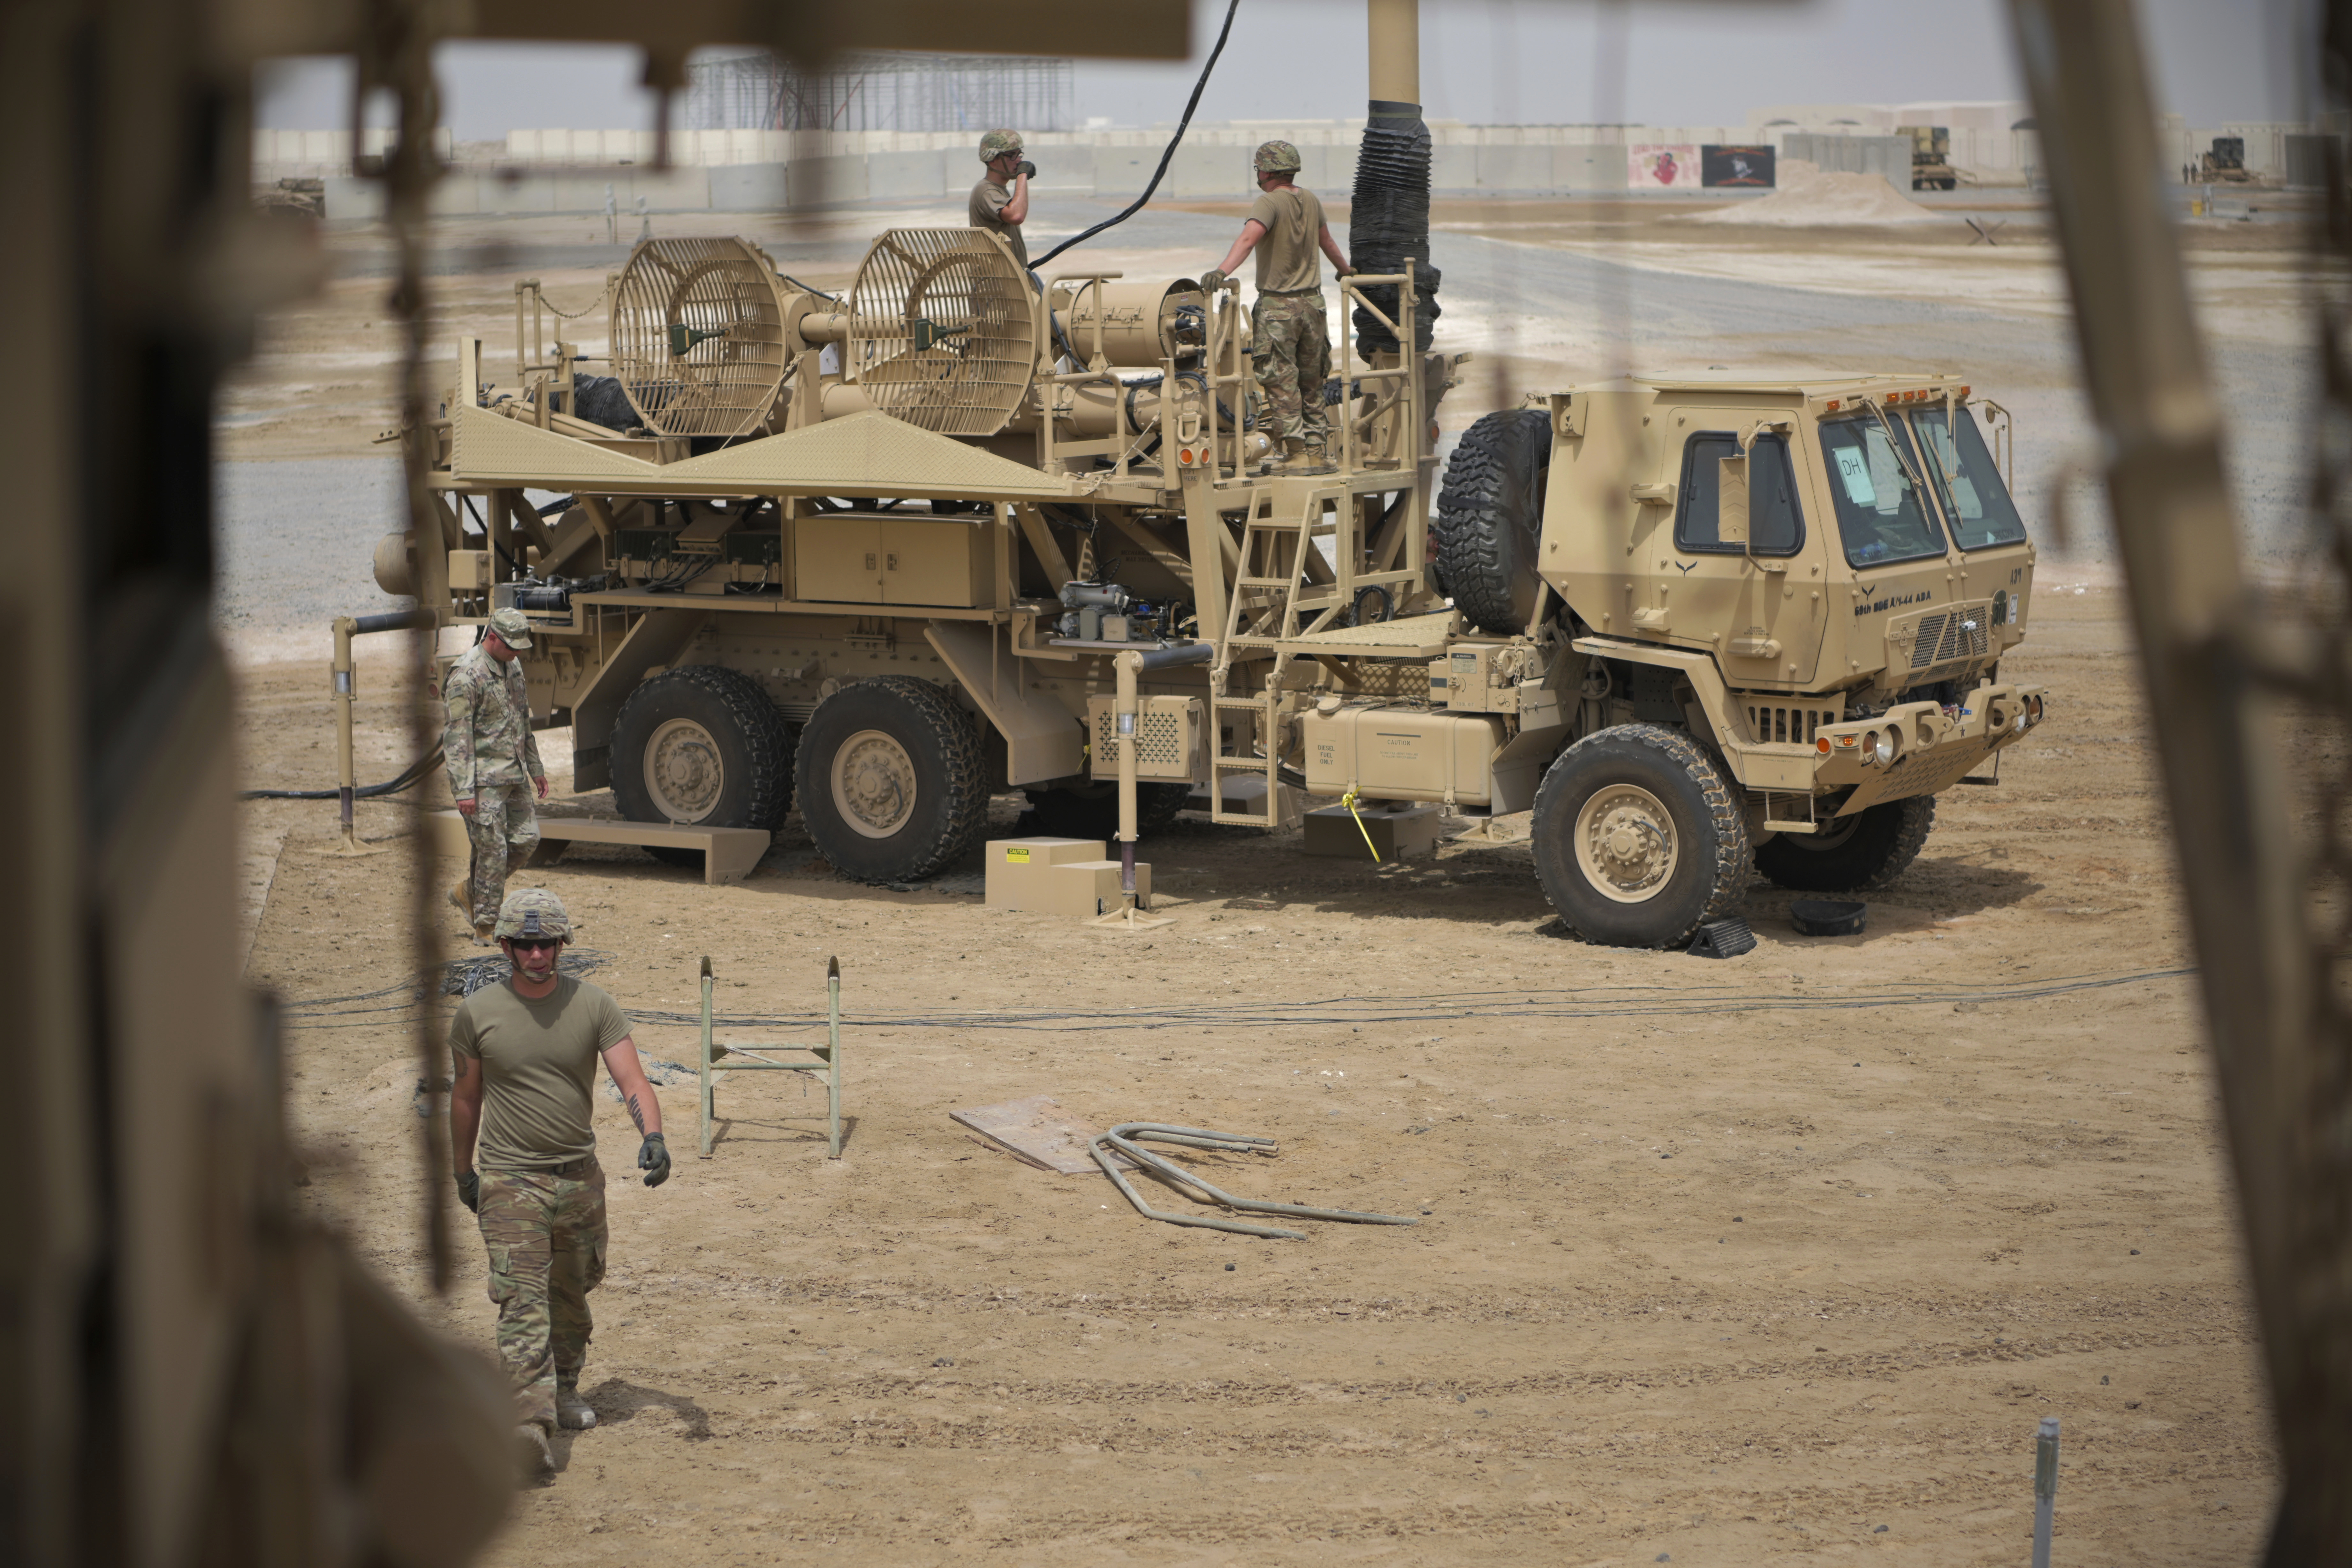 Le truppe dell'esercito americano lavorano vicino a una batteria missilistica Patriot presso la base aerea di Al-Dhafra ad Abu Dhabi, negli Emirati Arabi Uniti.